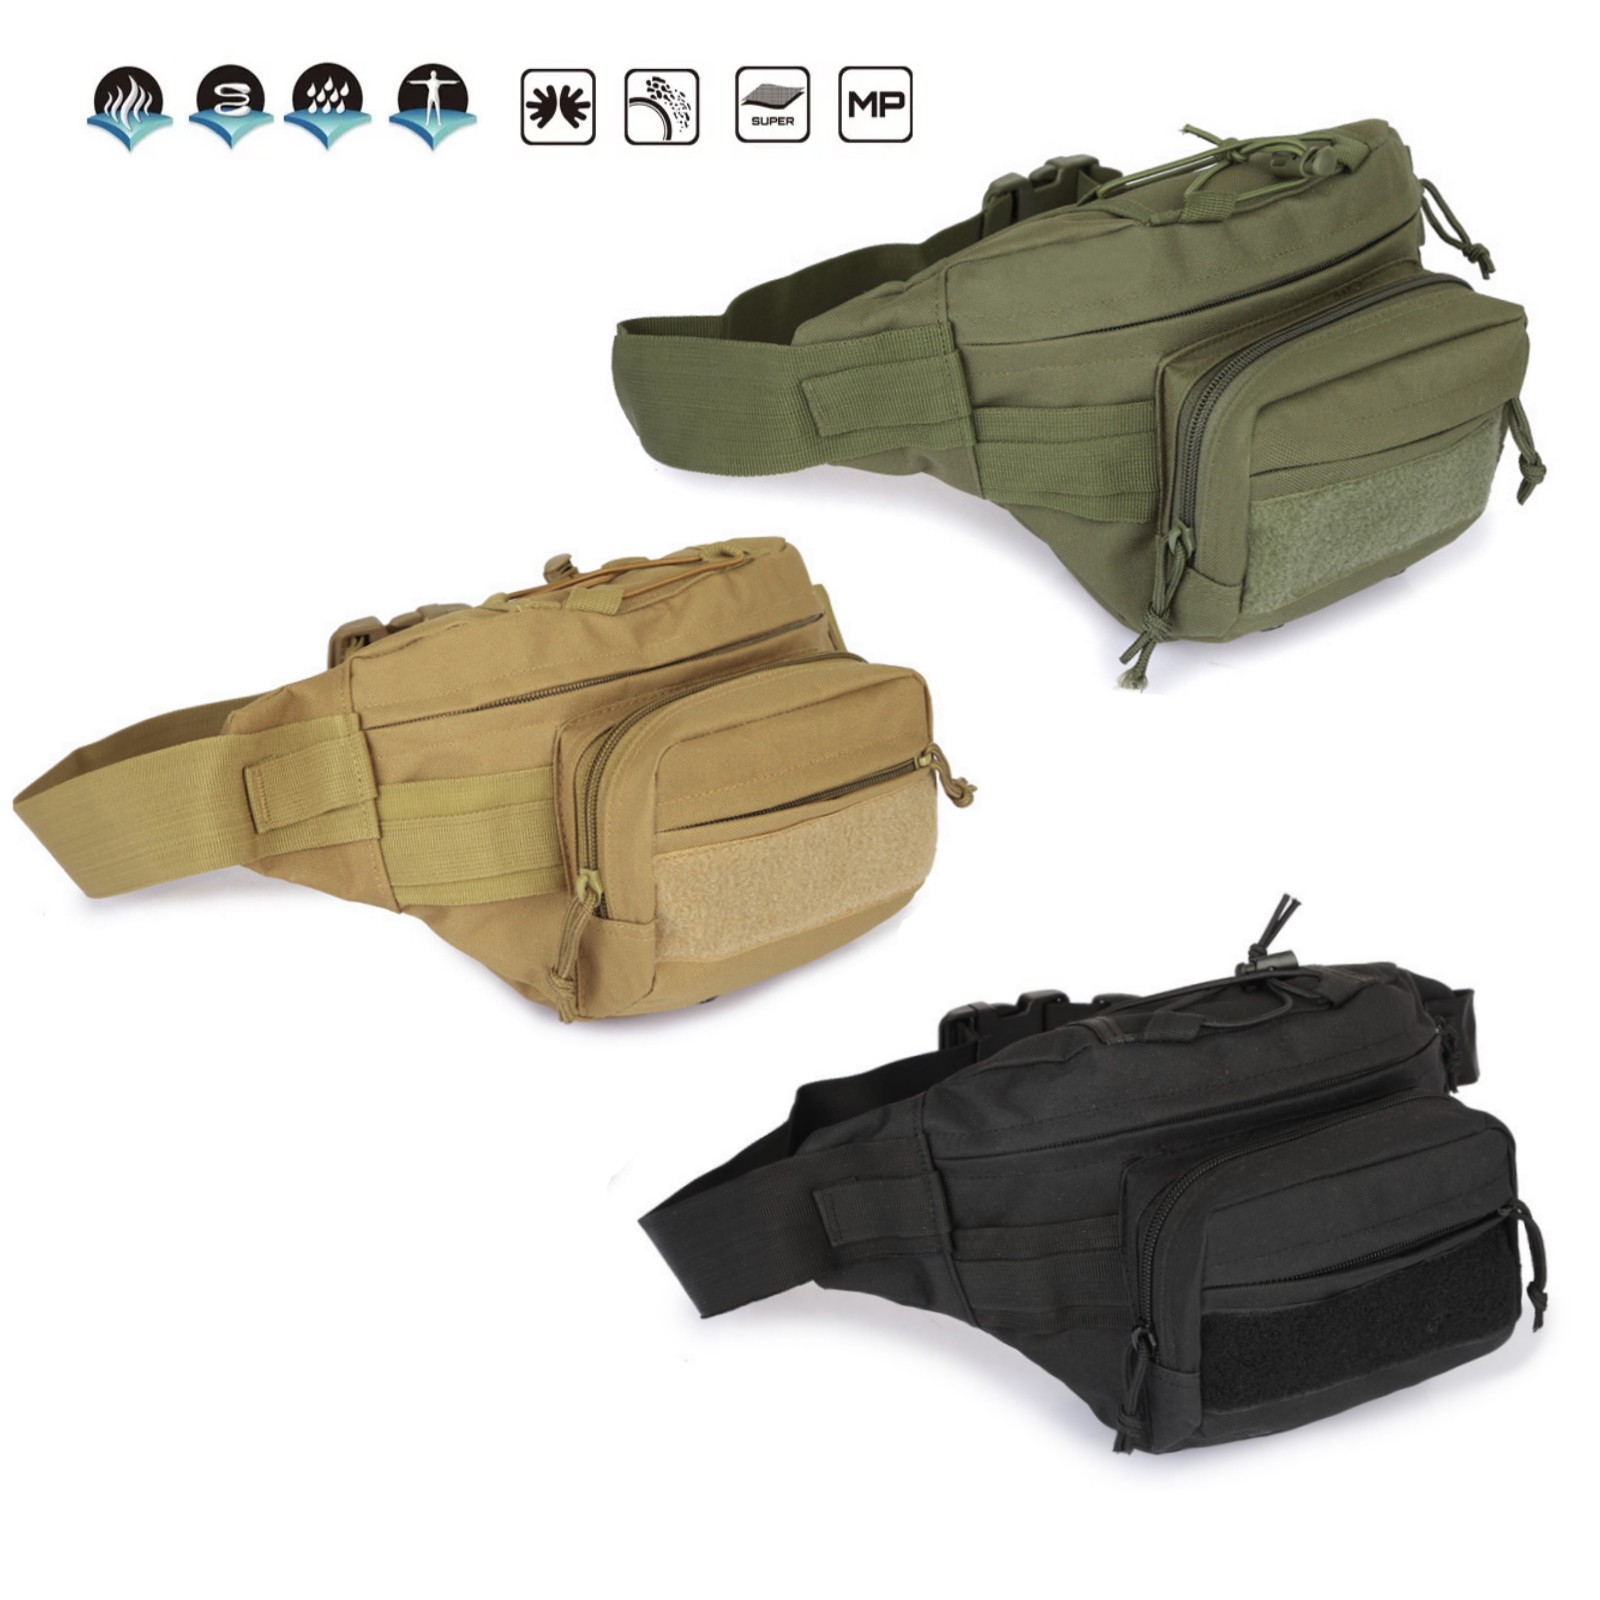 Gürteltasche großer Beutel Patronentasche für Patronenhülsen Molle Tactical Bag